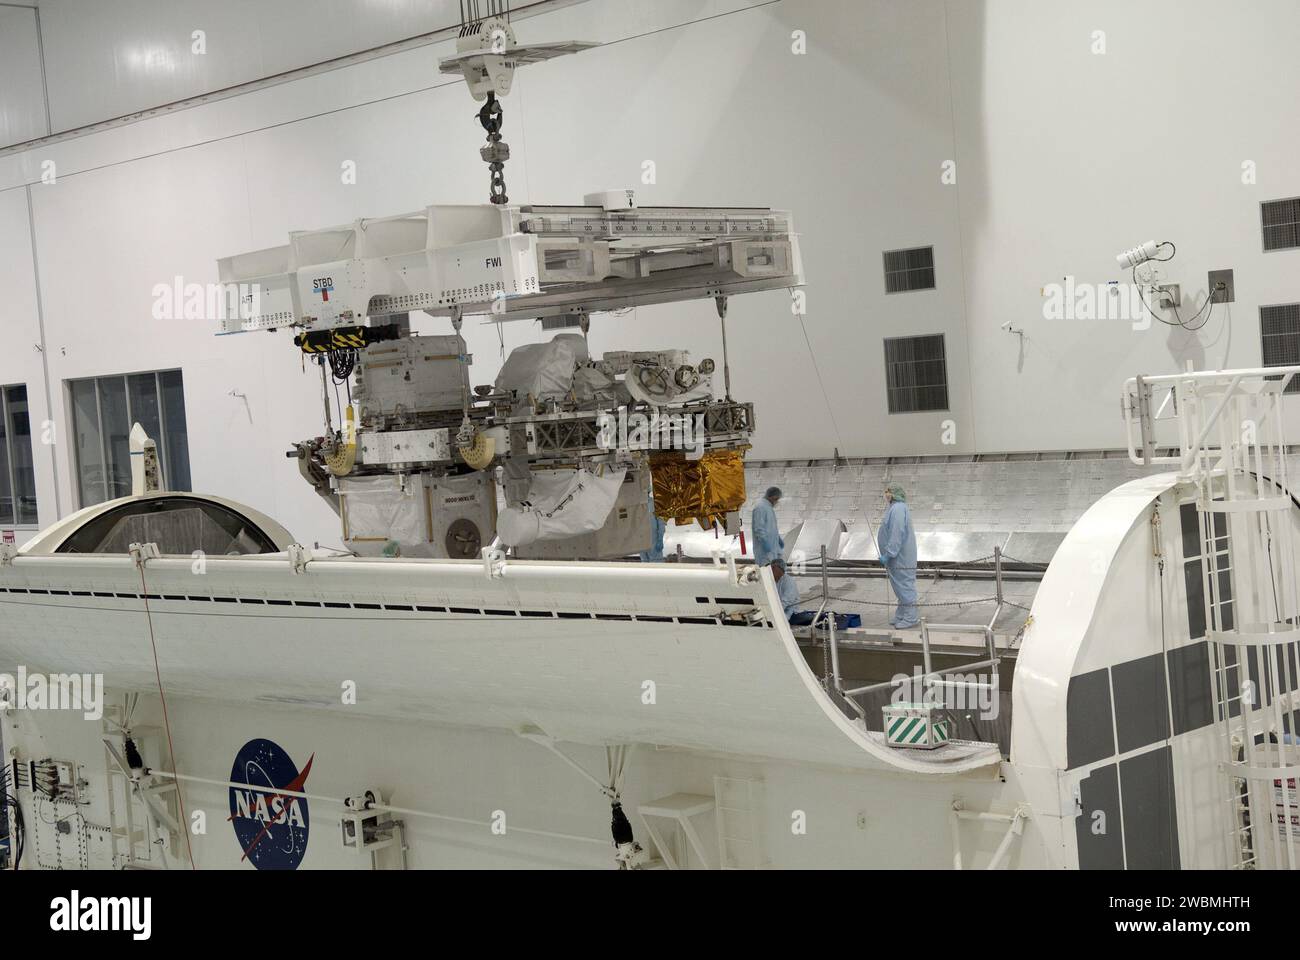 CAPE CANAVERAL, Fla. -- in der Space Station Processing Facility im Kennedy Space Center der NASA in Florida wird Express Logistics Carrier-3 in einen Nutzlastbehälter abgesenkt. Der Kanister wird die raumgebundene Nutzlast auf der Reise zum Launch Pad 39A schützen, wo sie später im Nutzlastbereich des Space Shuttle Endeavour installiert wird. ELC-3 ist mit einer Vielzahl von Ersatzteilen für die Internationale Raumstation ausgestattet, einschließlich zwei S-Band-Kommunikationsantennen, einem Hochdruckgastank, zusätzlichen Ersatzteilen für Dextre und Mikrometeoroid-Abschirmungen. ELC-3 fliegt an Bord zur Station Stockfoto